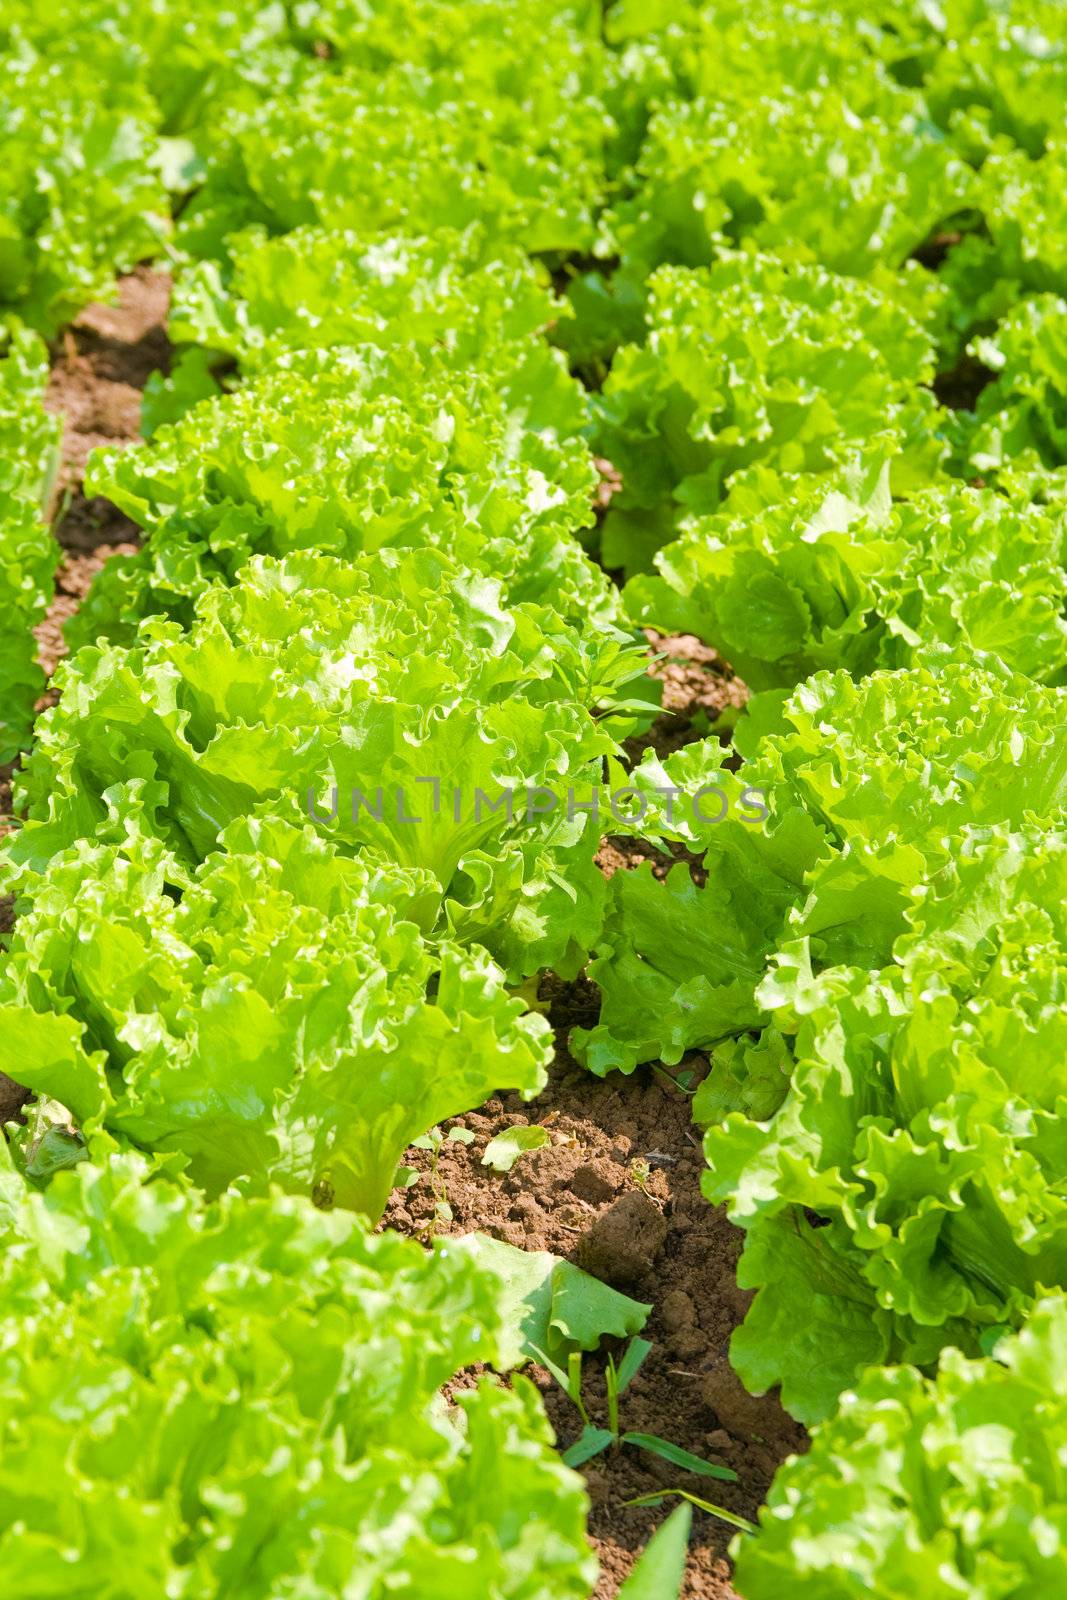 Healthy home lettuce in rows in garden.